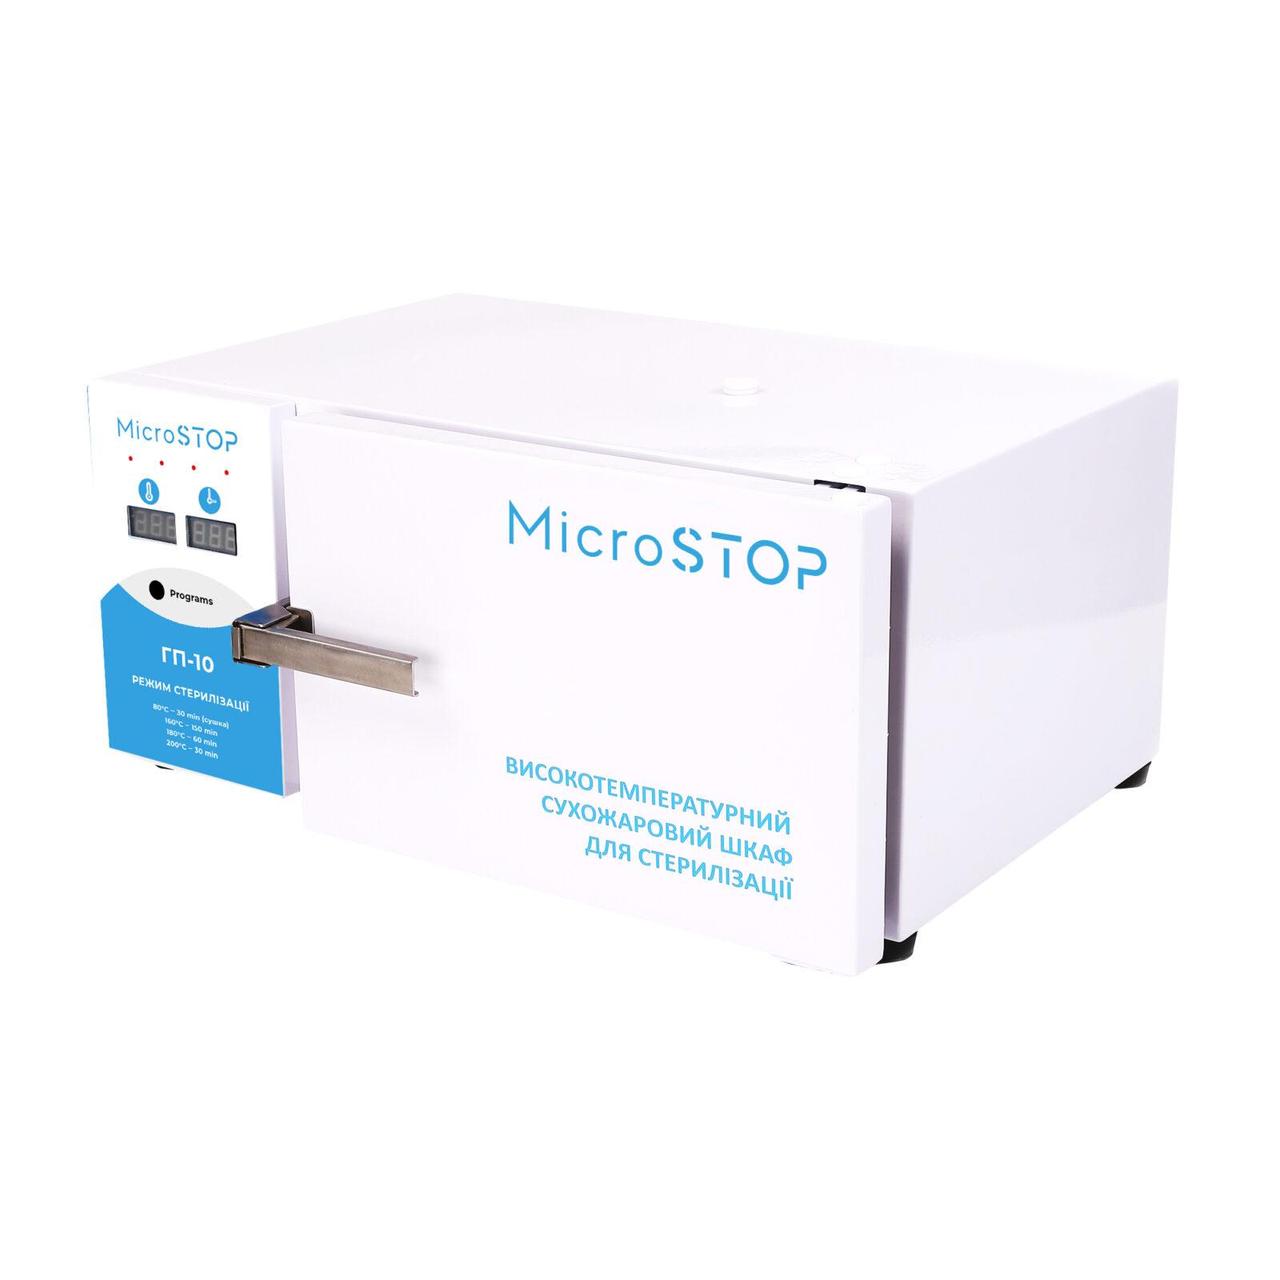 Високотемпературна сухожарова шафа для стерилізації MICROSTOP ГП10